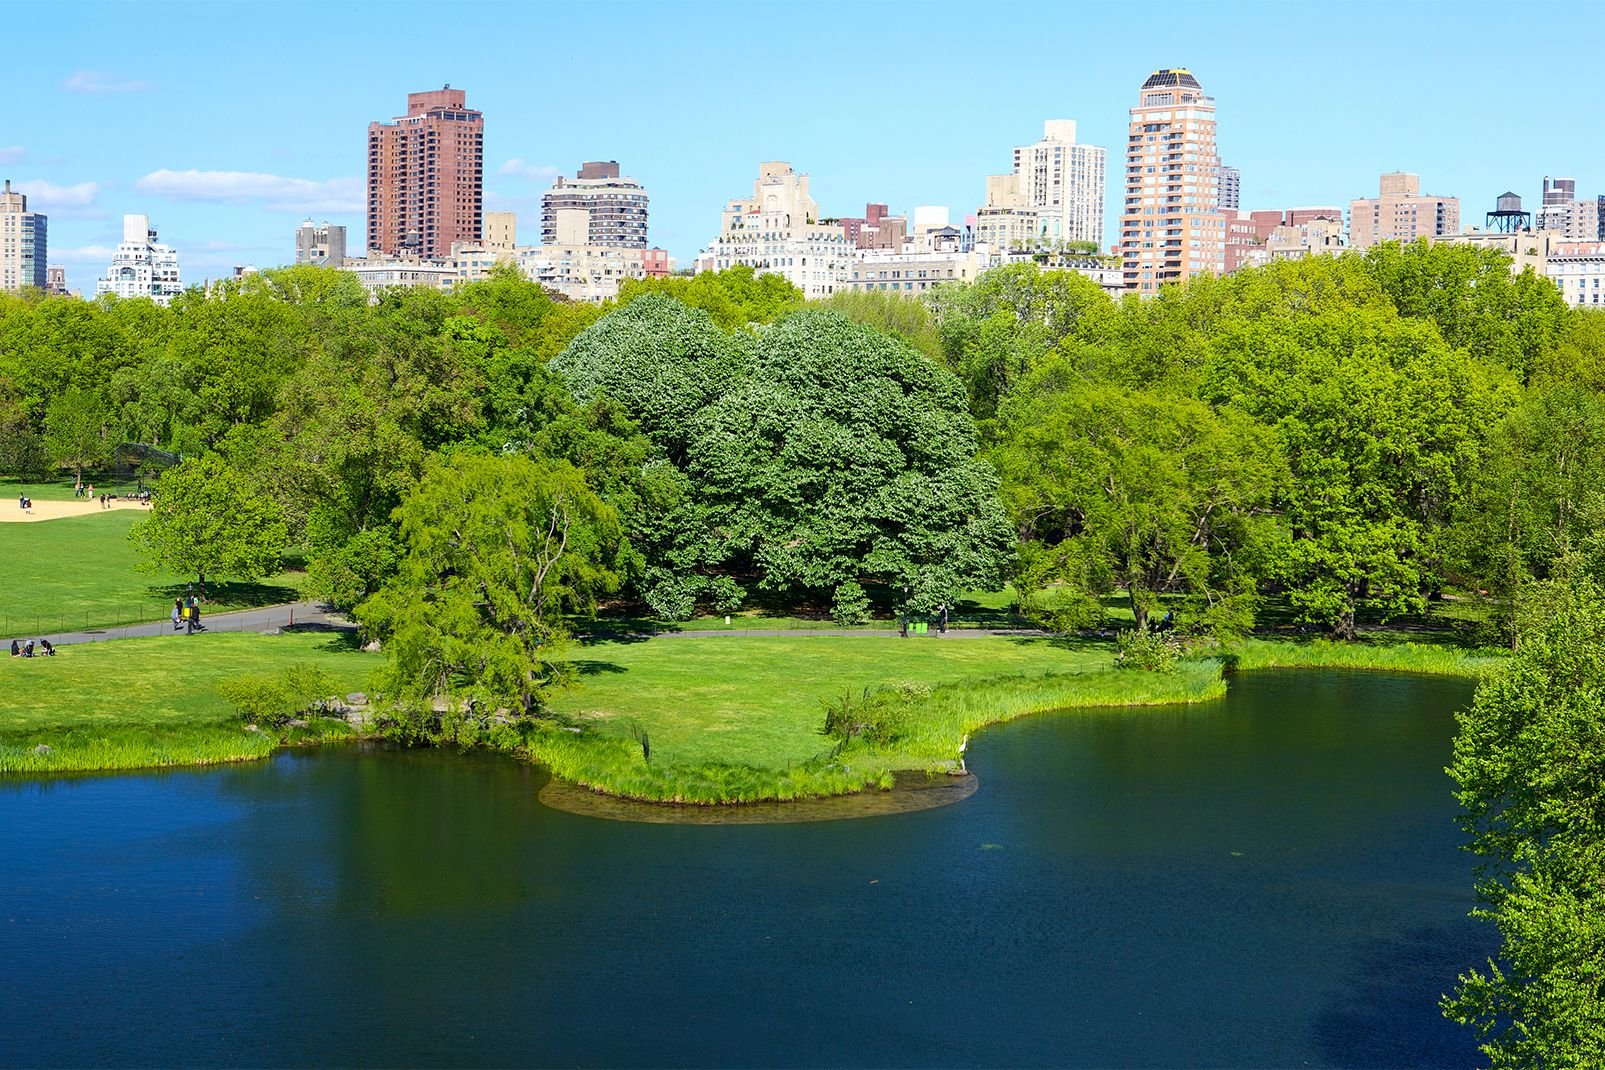 L’Uptown, entre la 59ème rue et la 110ème rue, compte parmi les quartiers les plus riches de New York. Boutiques de luxe, hôtels 5*, immeubles de grand standing, le quartier présente pour les visiteurs un double intérêt : il abrite à la fois le poumon de la ville, Central Park, et surtout les plus beaux musées New Yorkais. A l’est de Central Park, dans l’Upper East Side, le tronçon ...